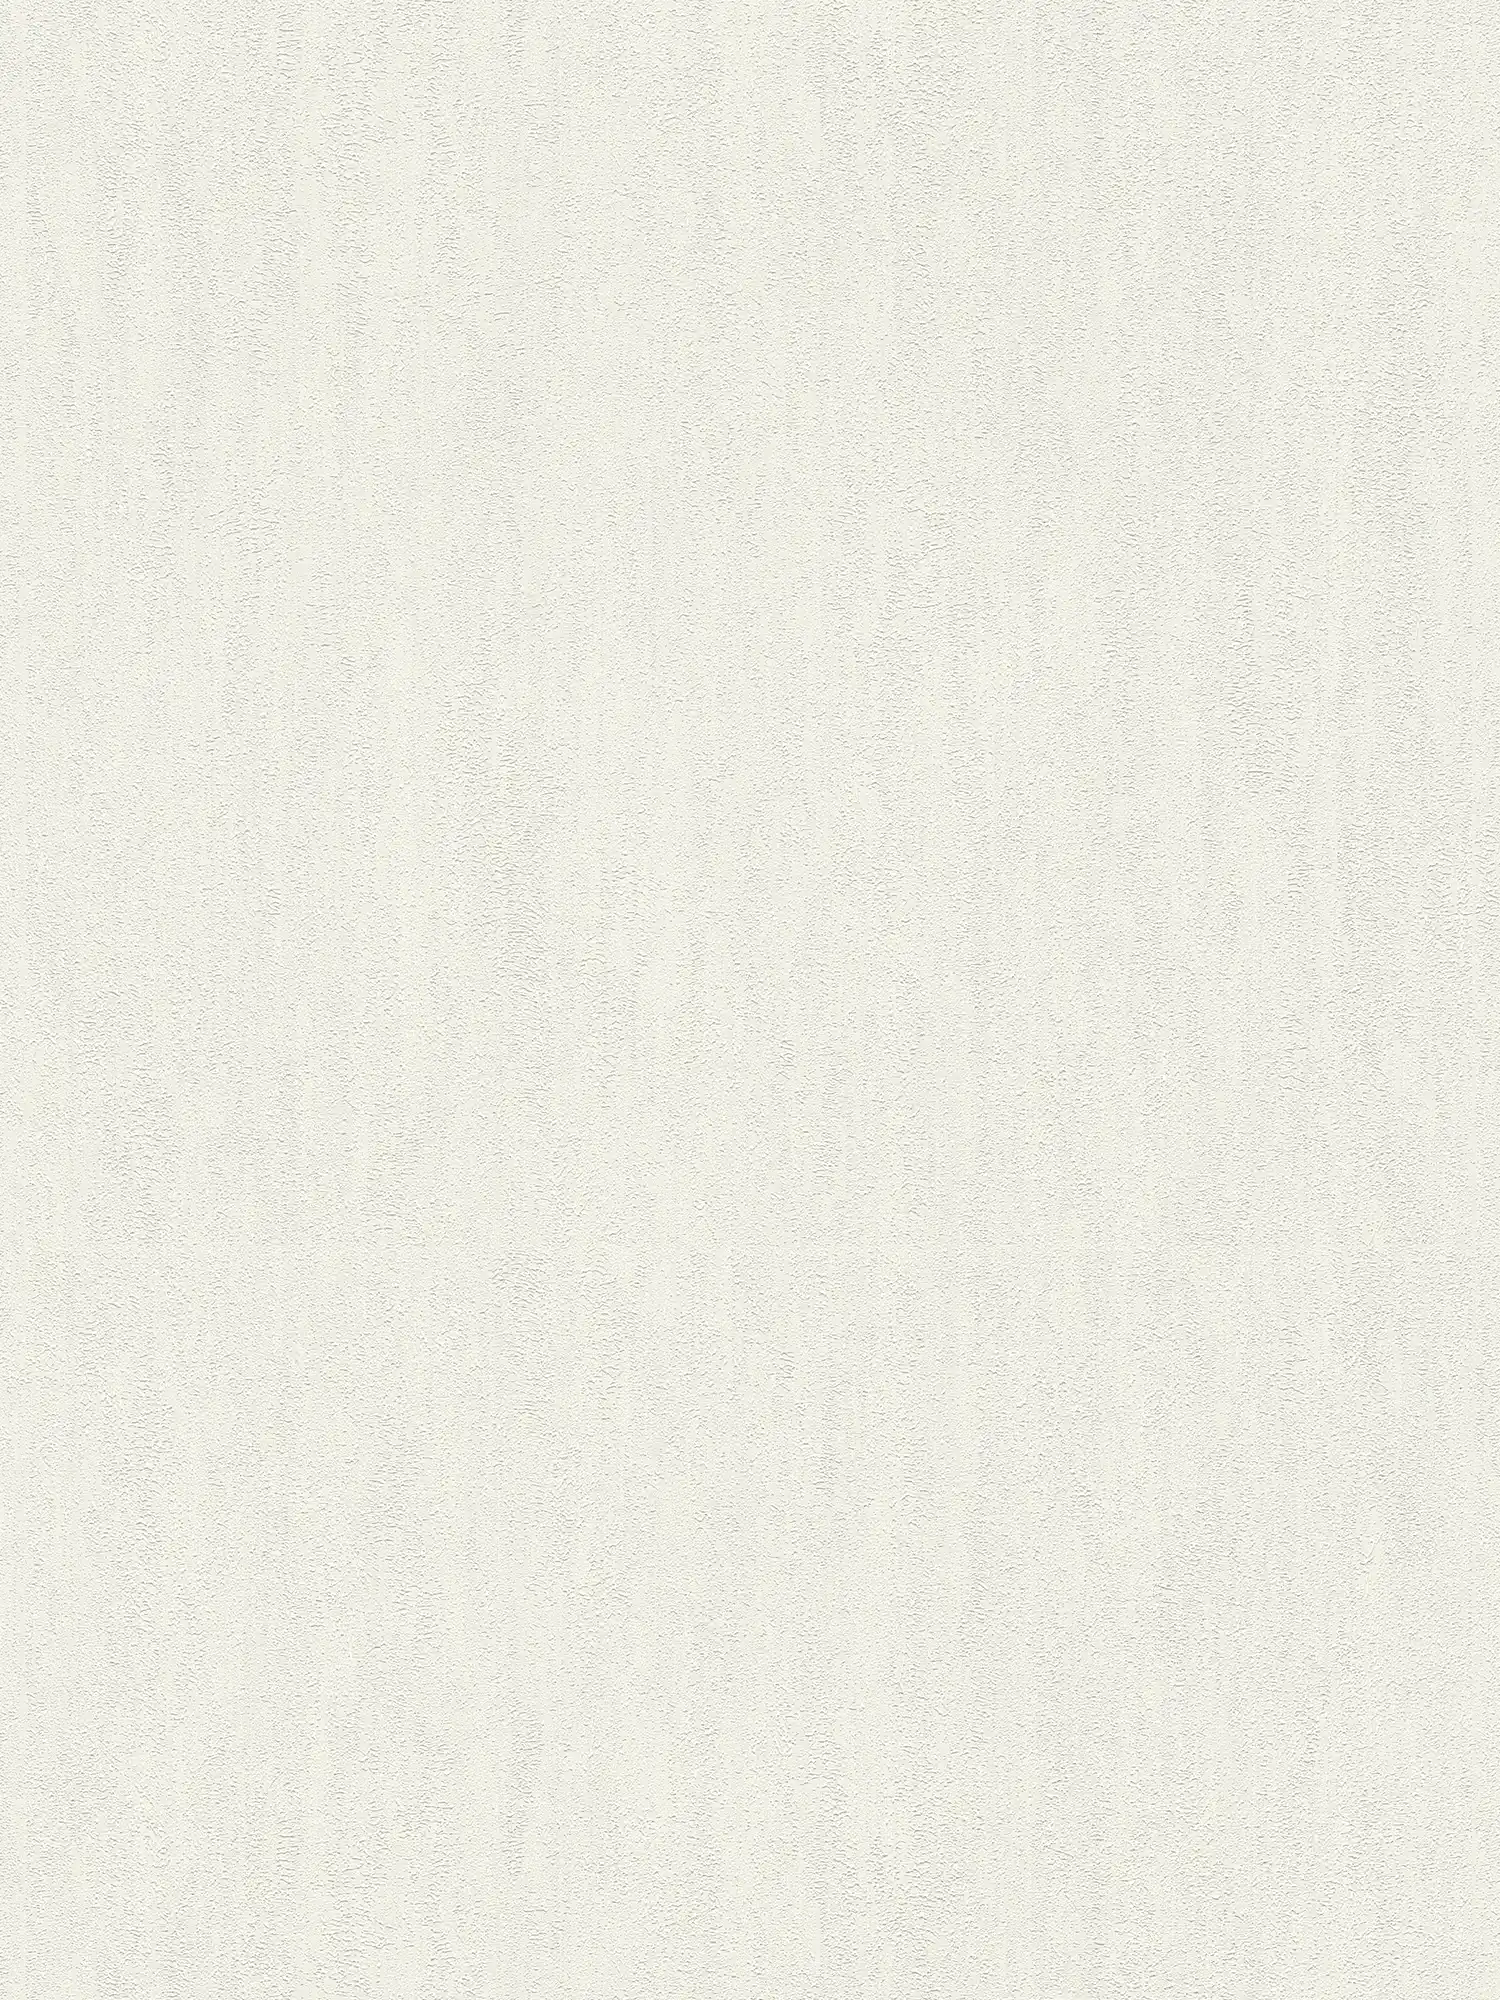 Papel pintado no tejido de color blanco con estructura rugosa
